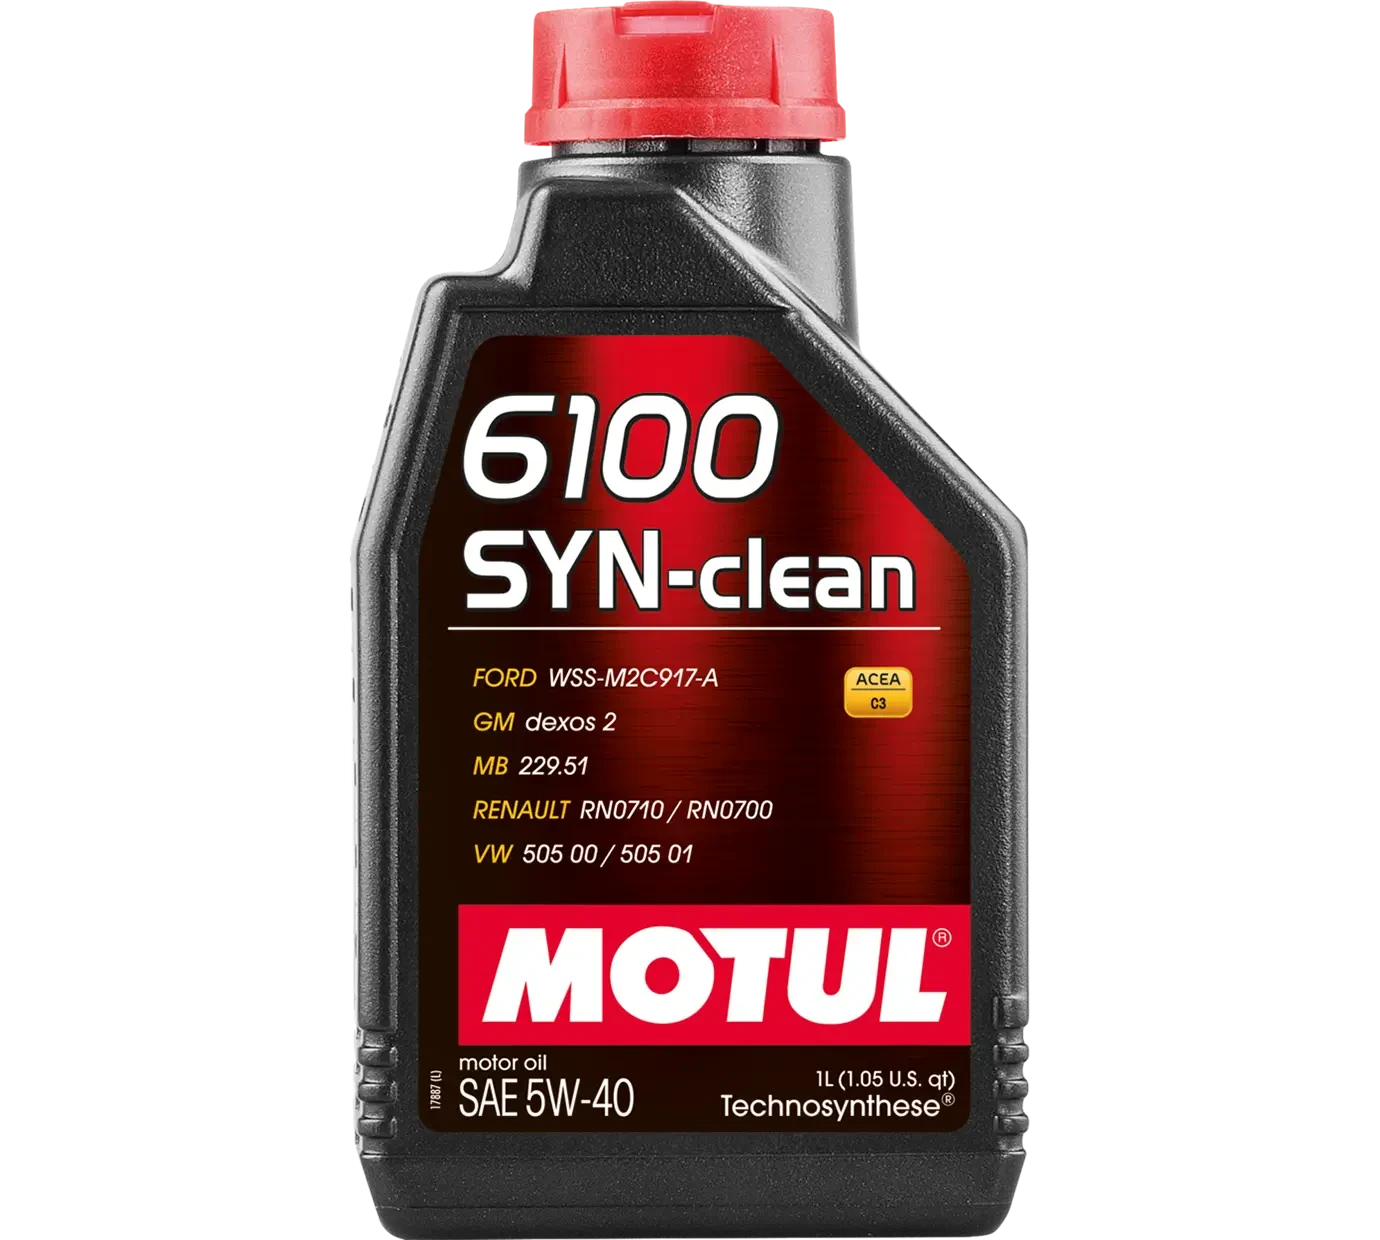 MOTUL 6100 SYN-CLEAN 5W-40